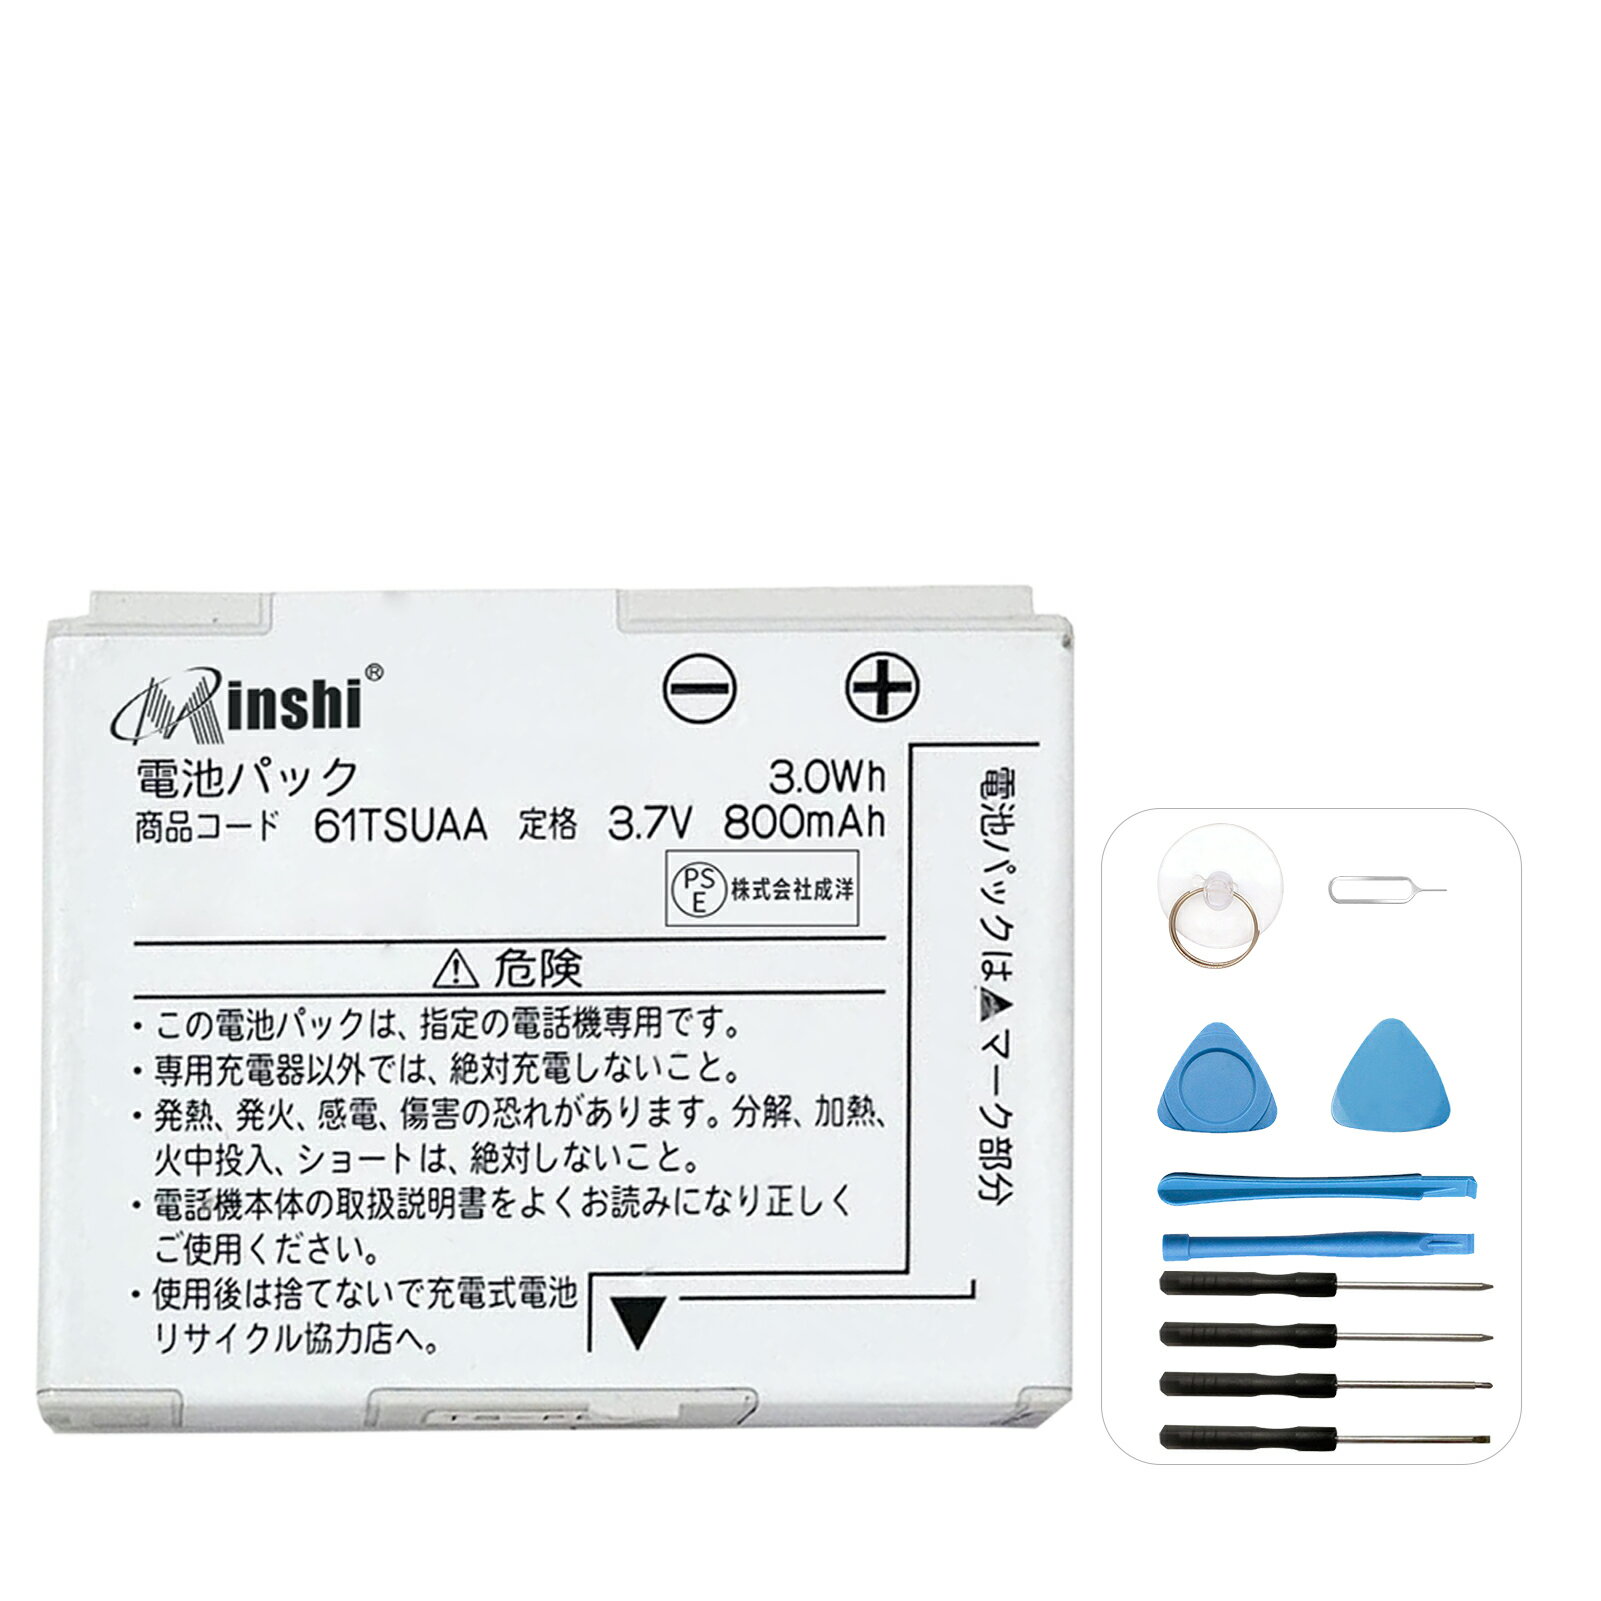 minshi 新品 SHARP T001 互換バッテリー 高品質交換用電池パック PSE認証 工具セット 1年間保証 800mAh